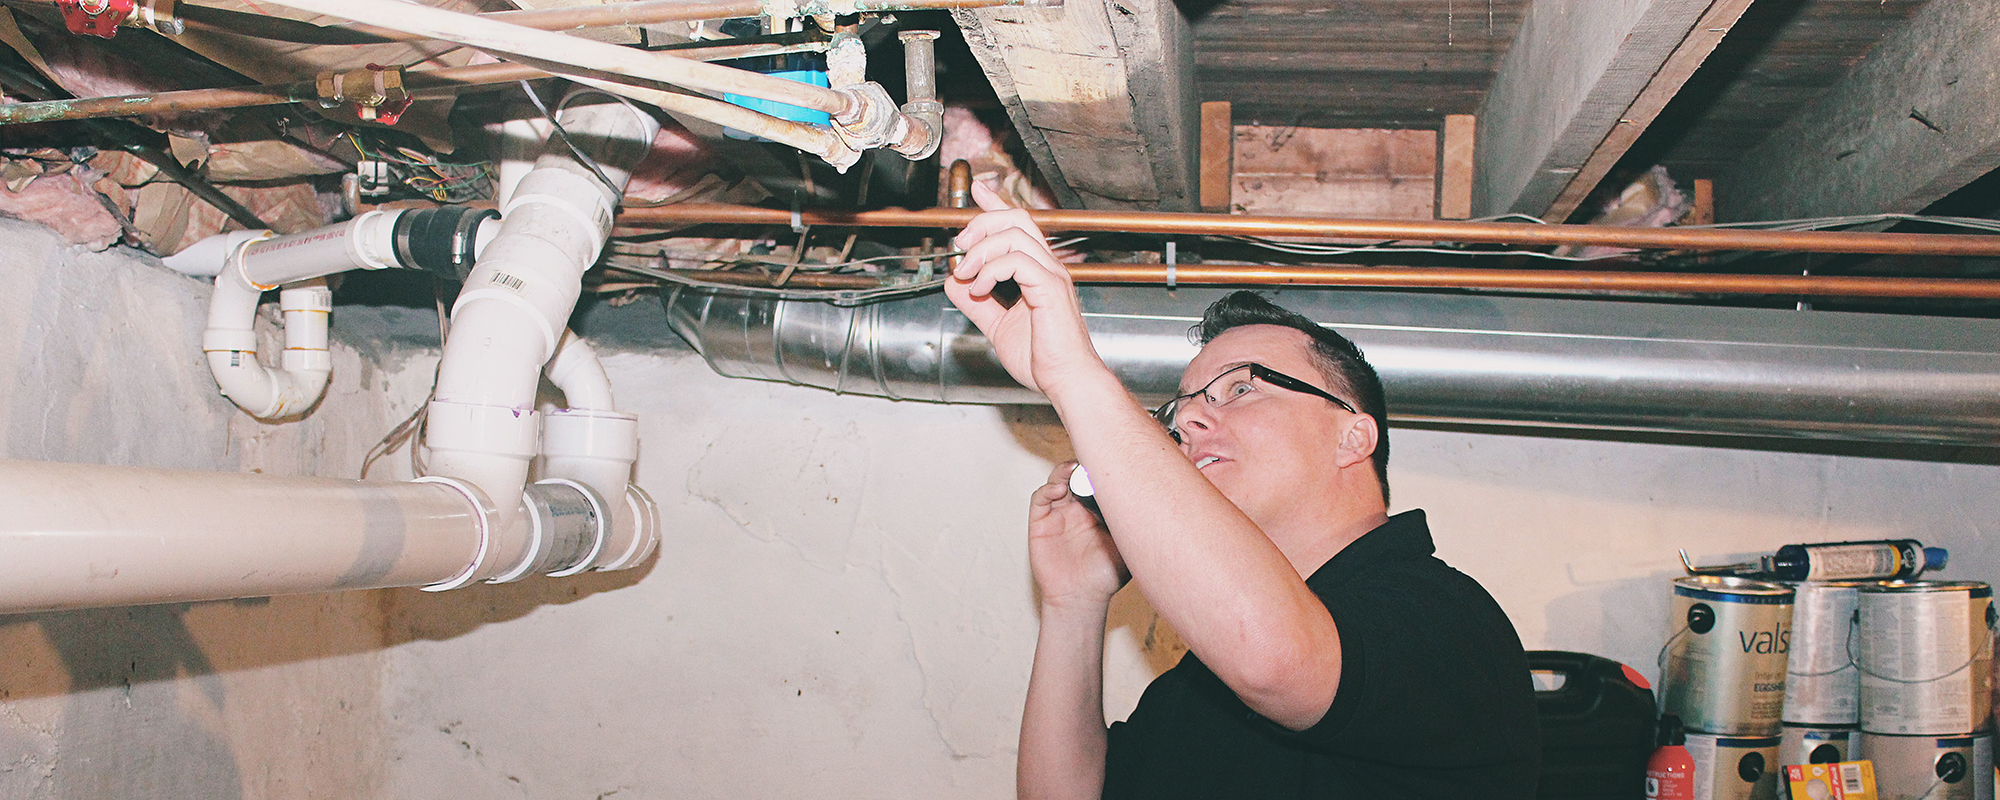 attic mold inspection Tidewater Region of Virginia